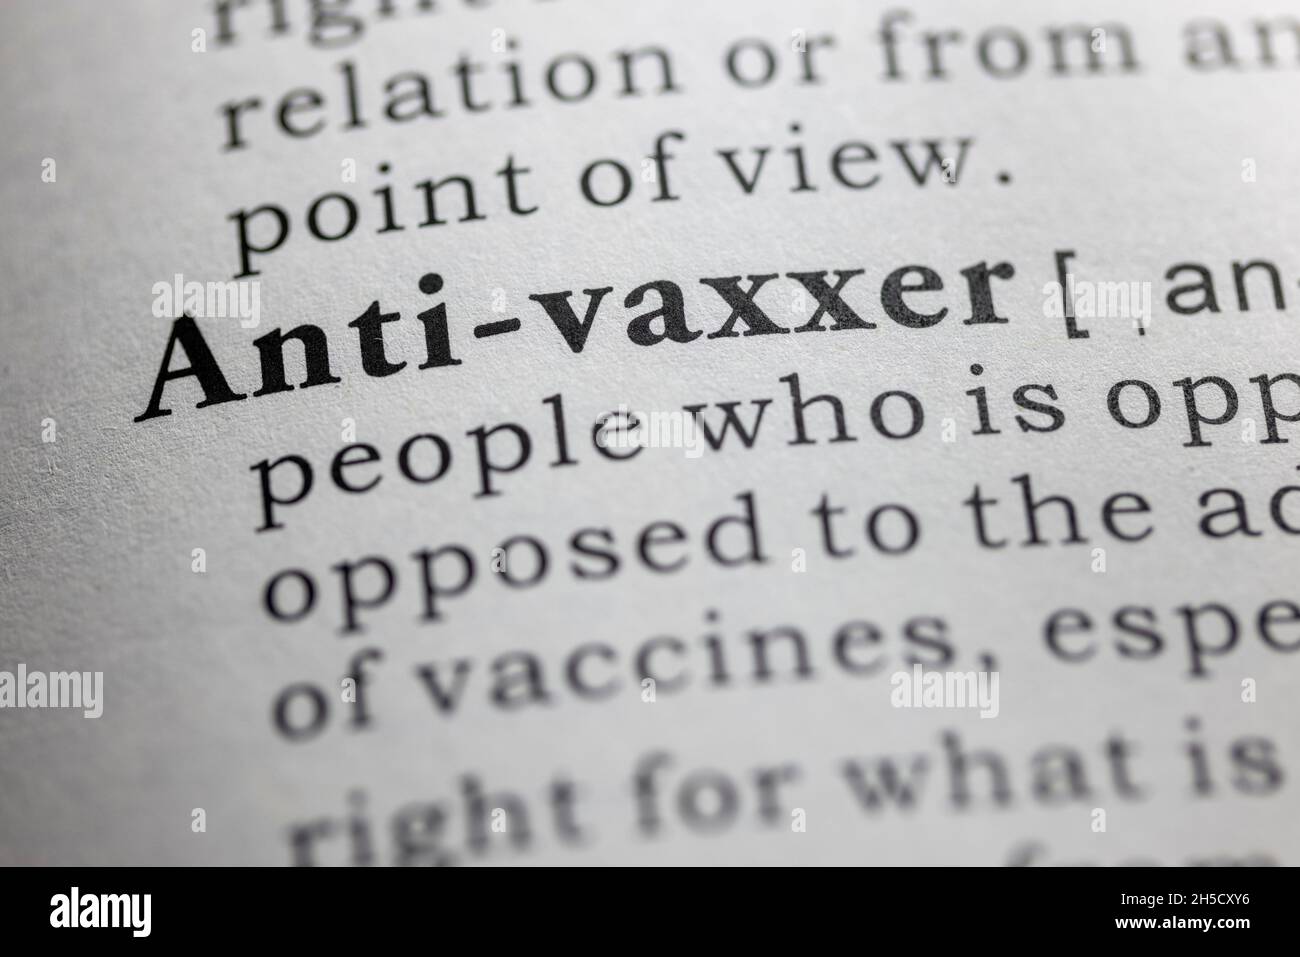 Palabra falsa del diccionario, definición del diccionario de anti-vaxxers Foto de stock